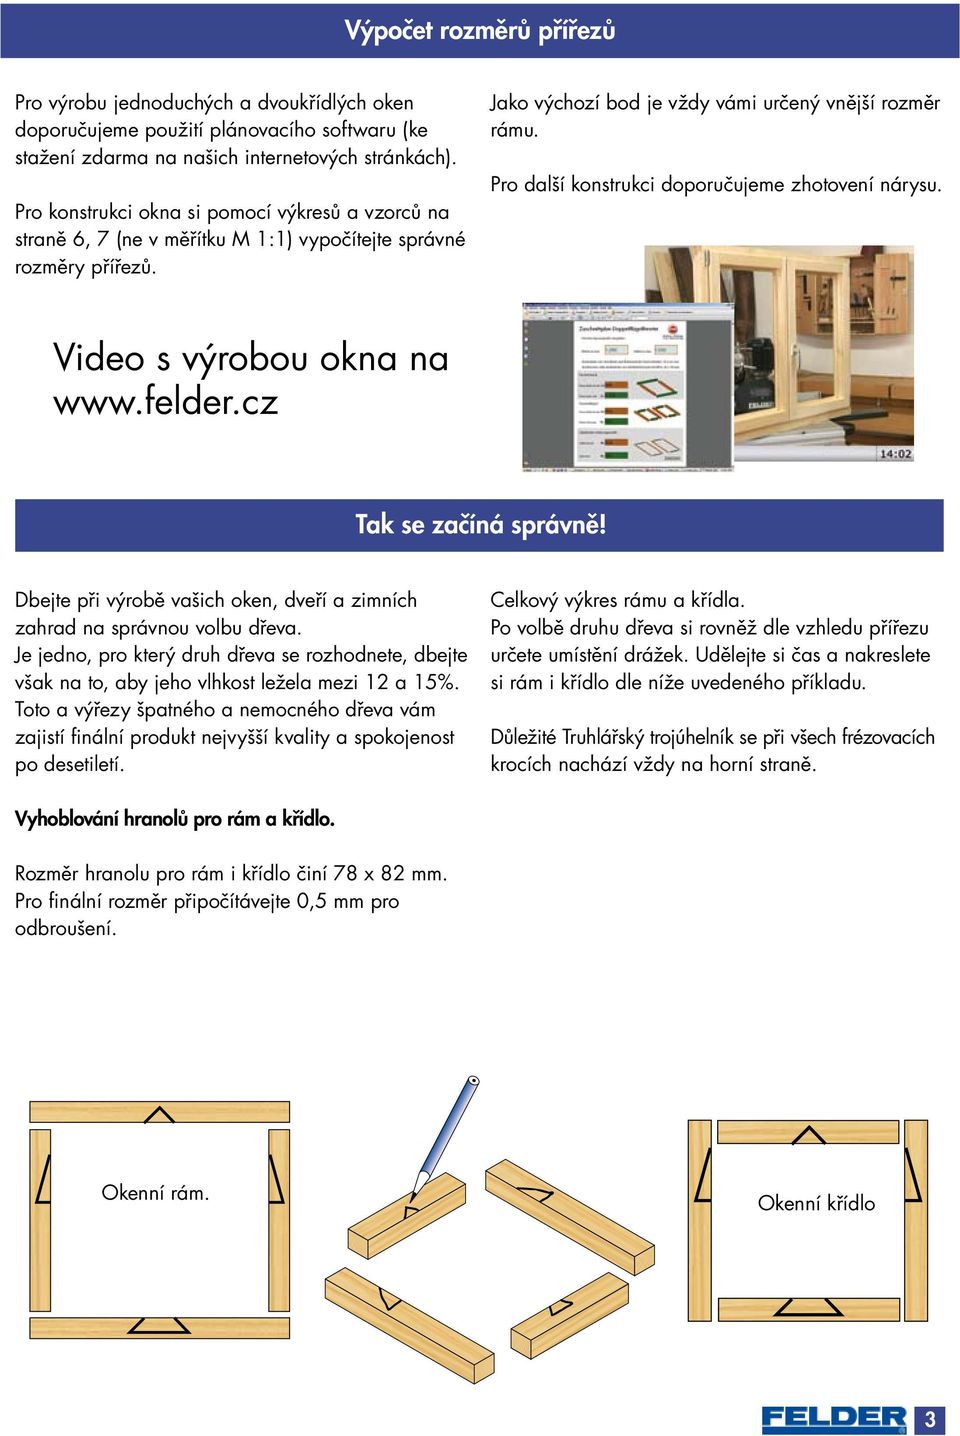 Pro další konstrukci doporučujeme zhotovení nárysu. Video s výrobou okna na www.felder.cz Tak se začíná správně! Dbejte při výrobě vašich oken, dveří a zimních zahrad na správnou volbu dřeva.